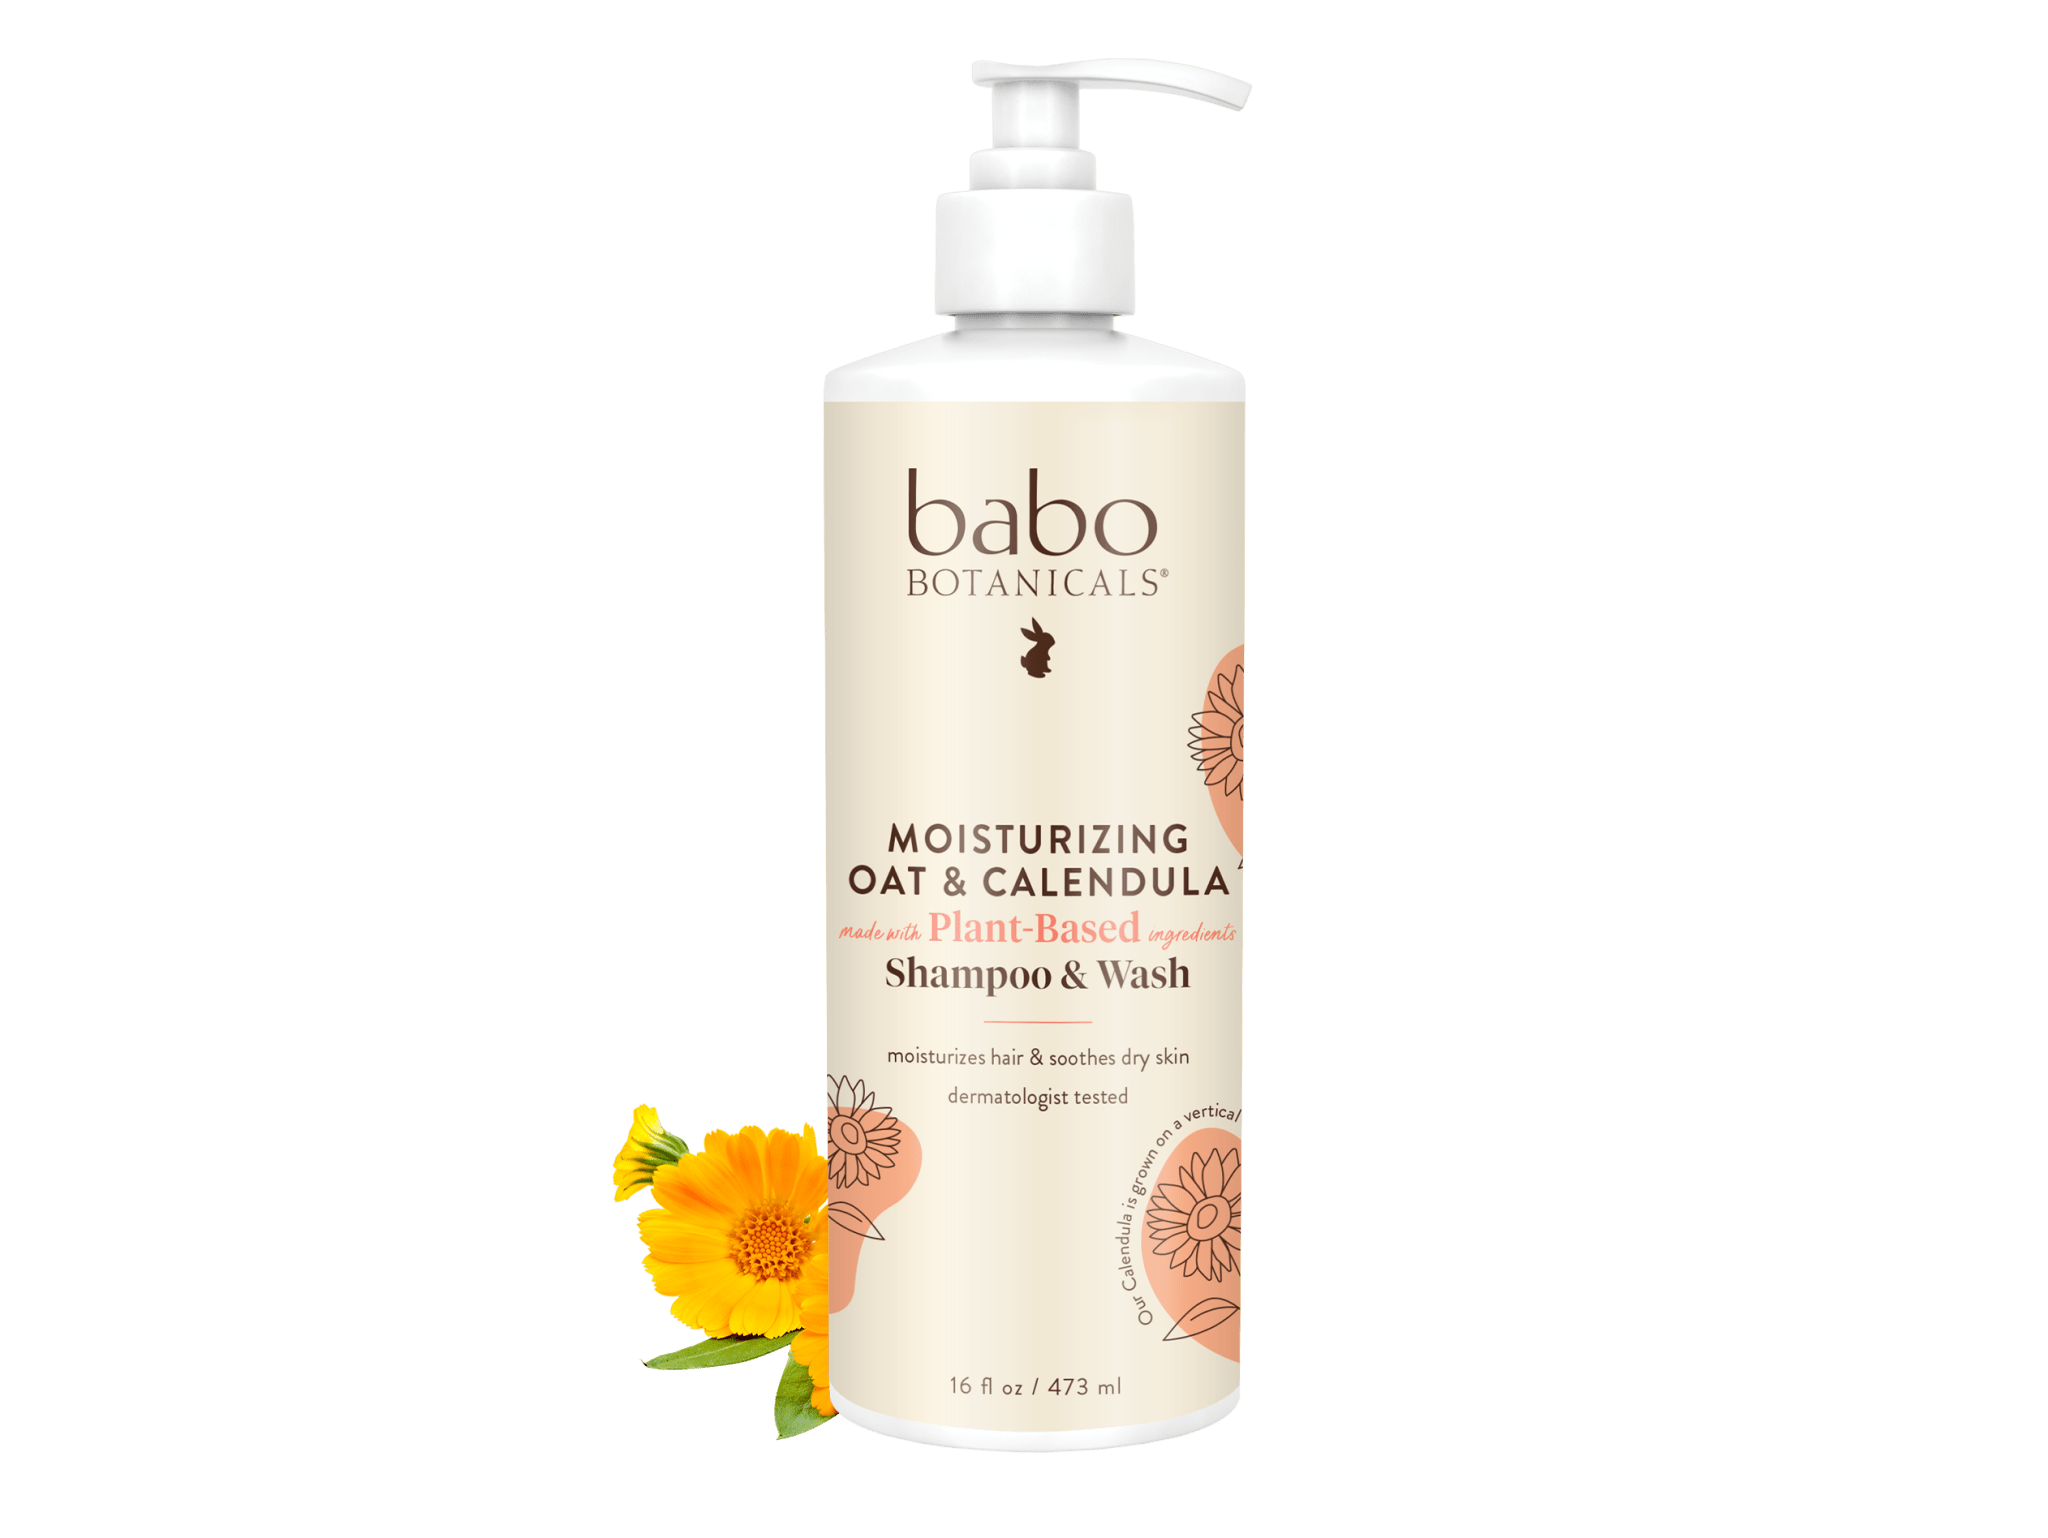 Moisturizing Oat & Calendula Shampoo & Wash - Babo Botanicals